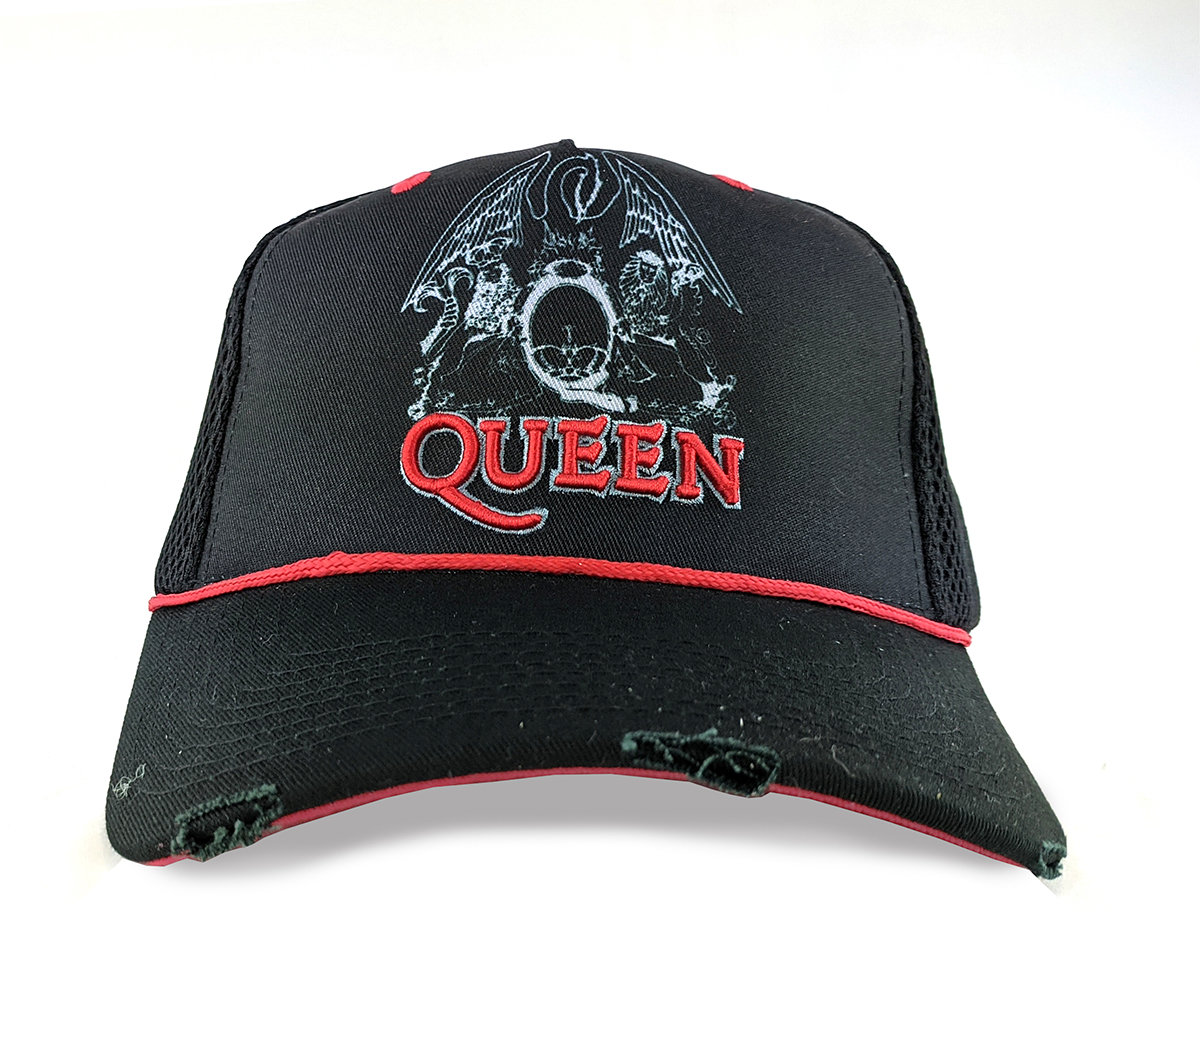 Queen - Line Art Crest Trucker Cap